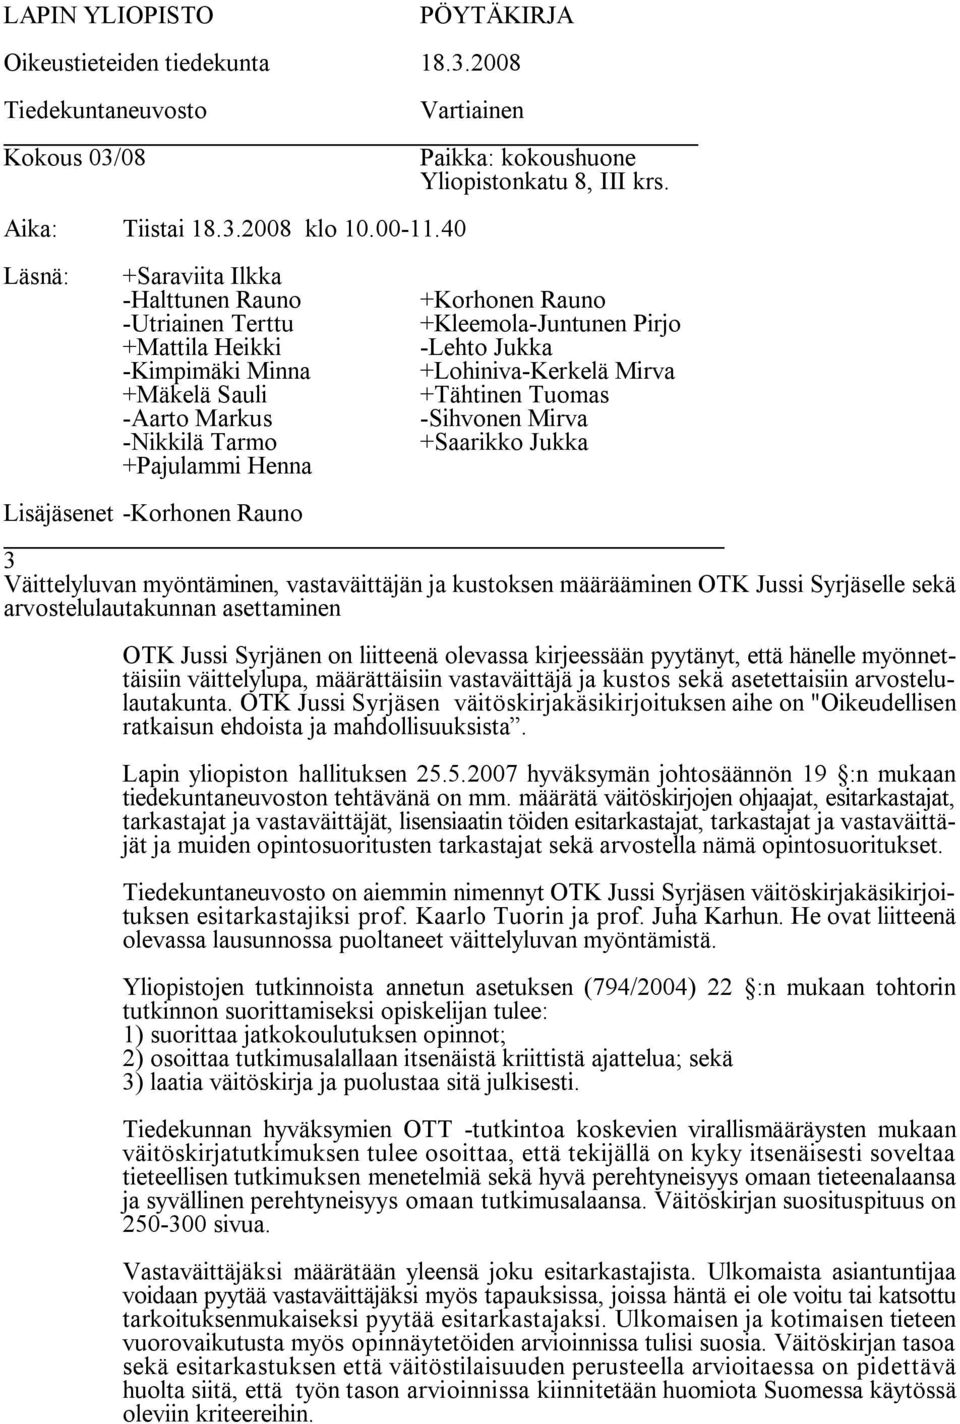 OTK Jussi Syrjäsen väitöskirjakäsikirjoituksen aihe on "Oikeudellisen ratkaisun ehdoista ja mahdollisuuksista. Lapin yliopiston hallituksen 25.